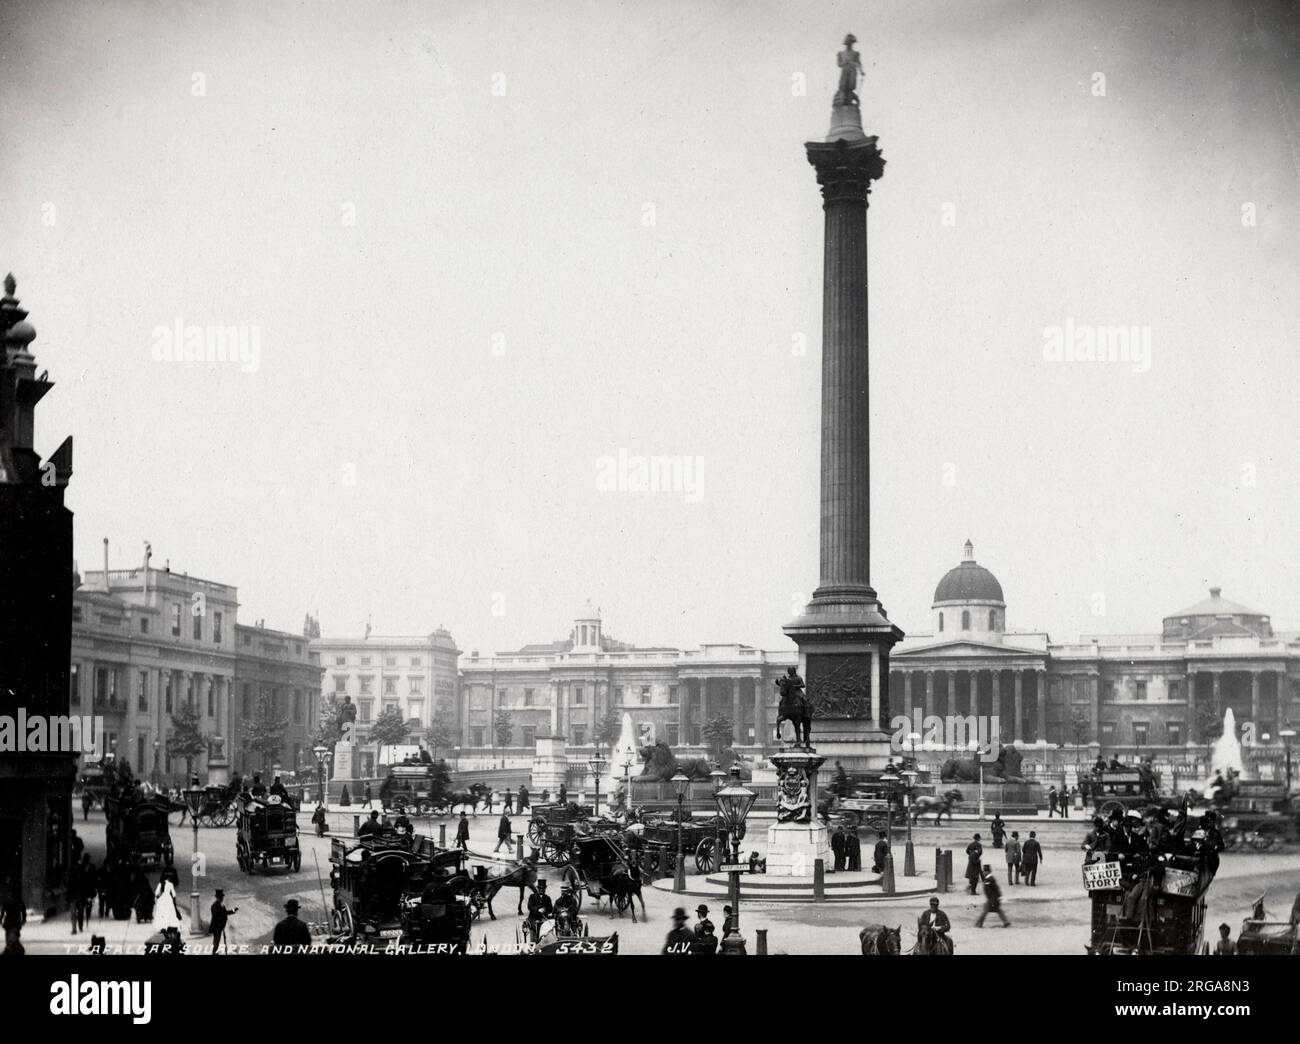 Photographie d'époque du 19th siècle : Trafalgar Square, Nelson's Column, National Gallery, Londres, cheval tiré et trafic piétonnier. Banque D'Images